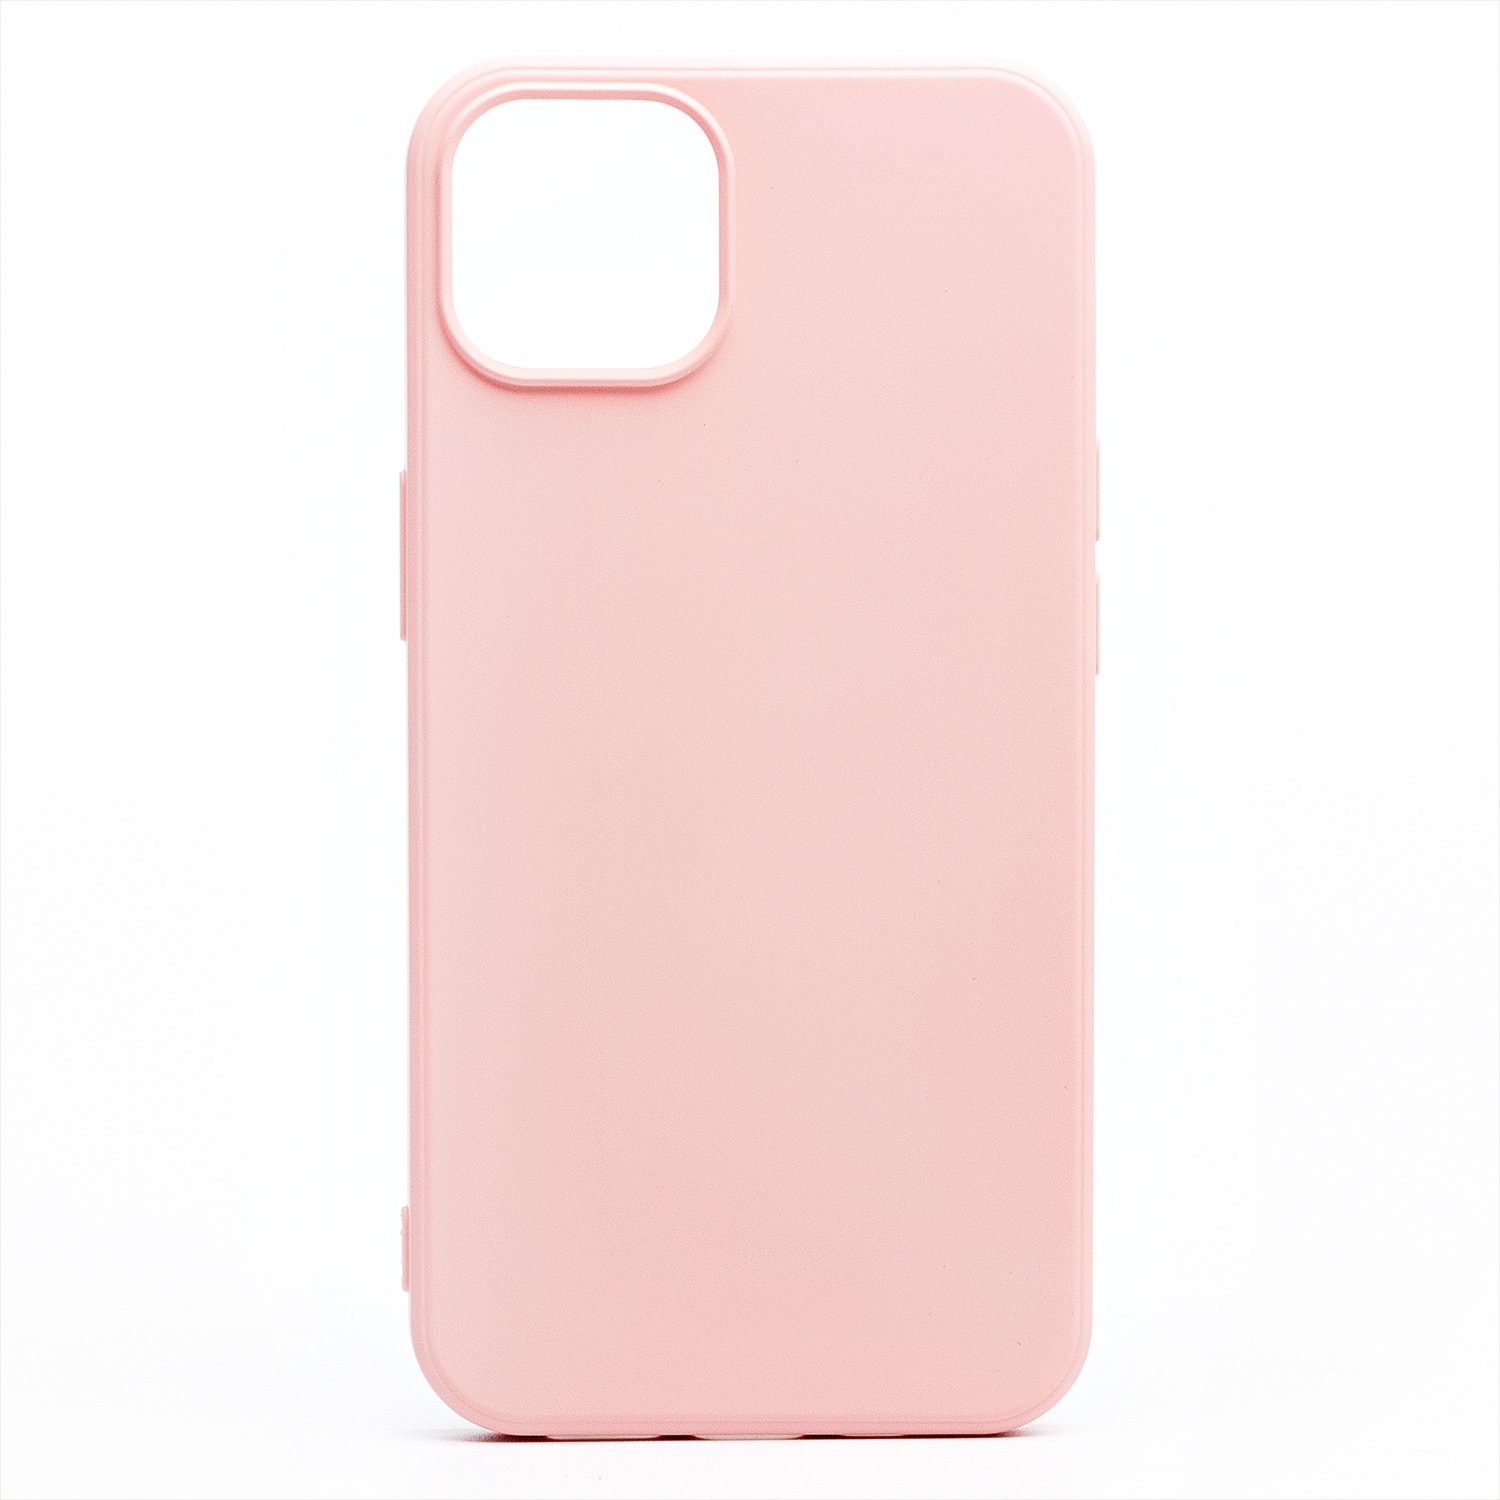 Чехол-накладка Activ Full Original Design для смартфона Apple iPhone 13 mini, силикон, светло-розовый (133240)